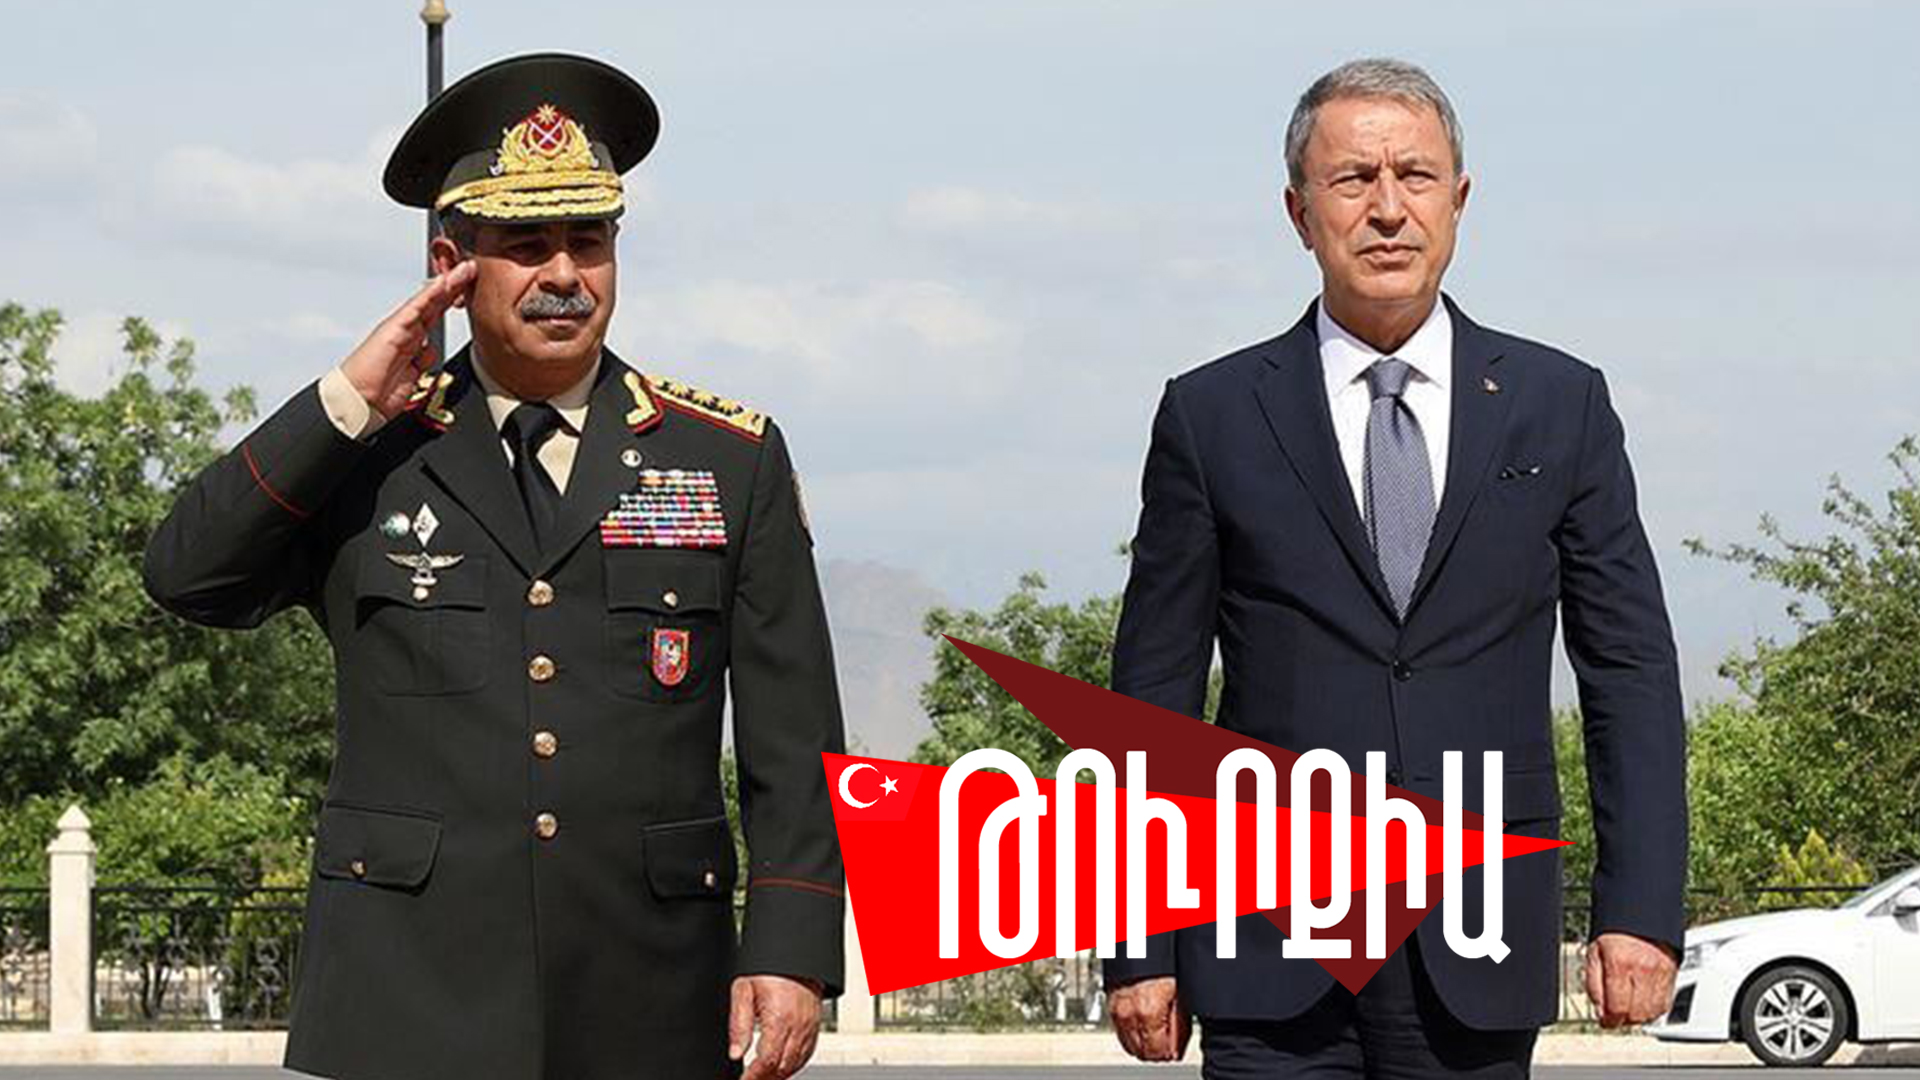 Անկարան պնդում է, թե «Ադրբեջանի հետ ռազմական գործակցությունը երրորդ երկրի դեմ չէ»․ Թուրքիան այս շաբաթ